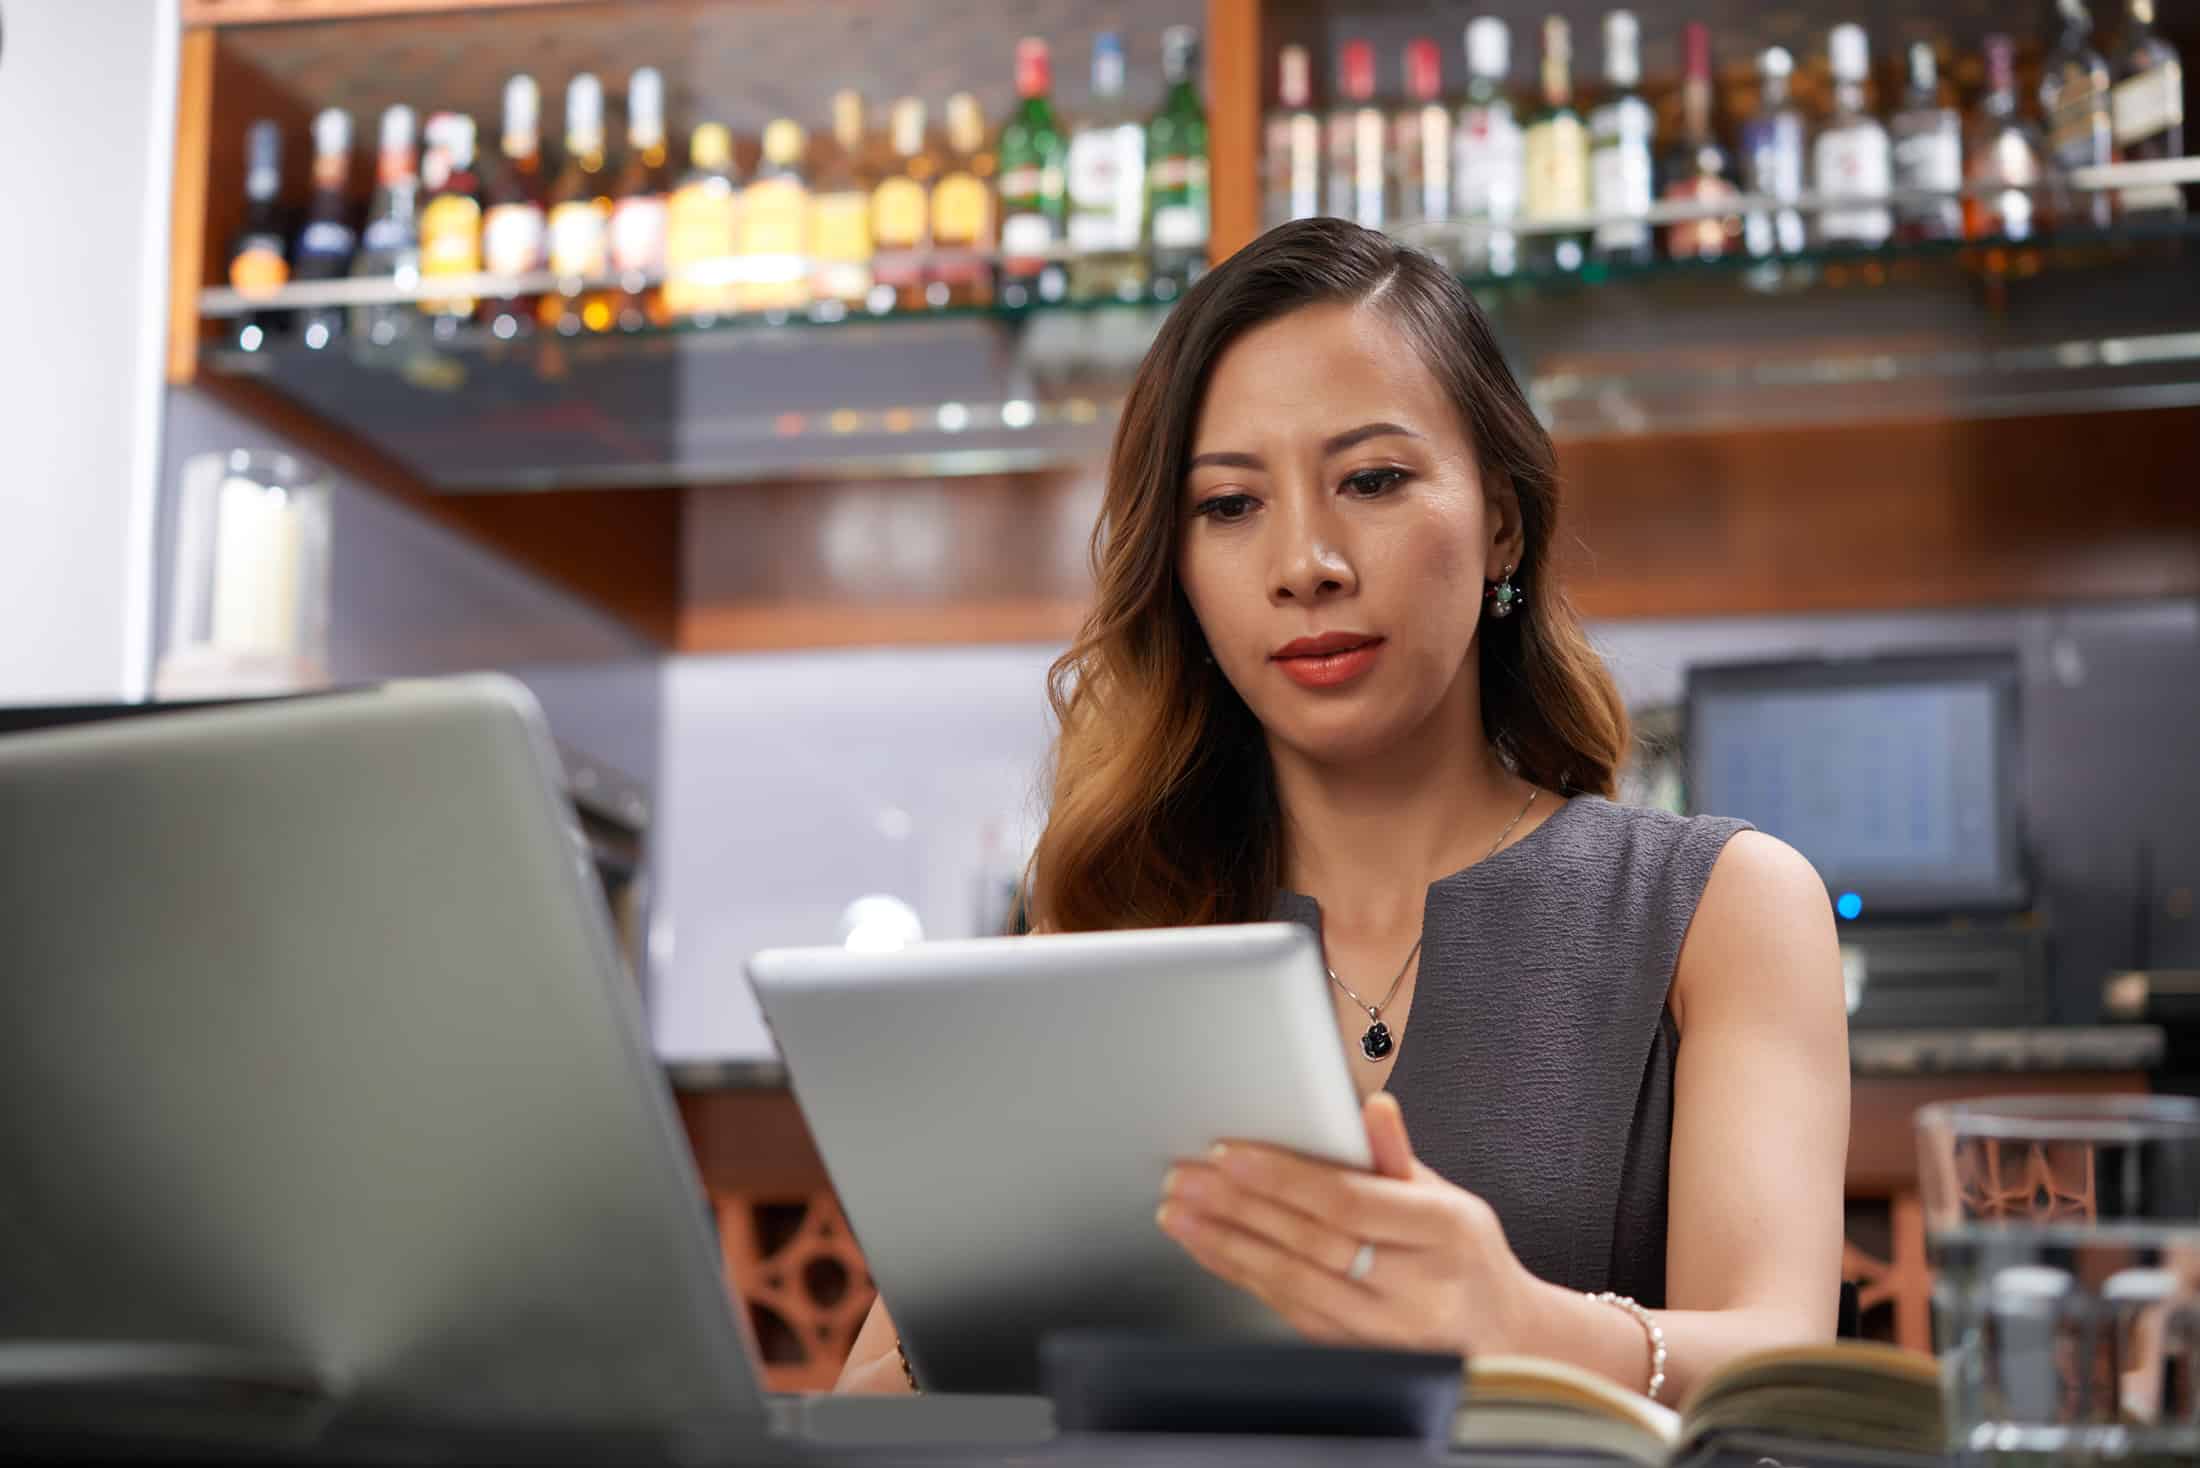 Woman standing behind a bar looking at an ipad